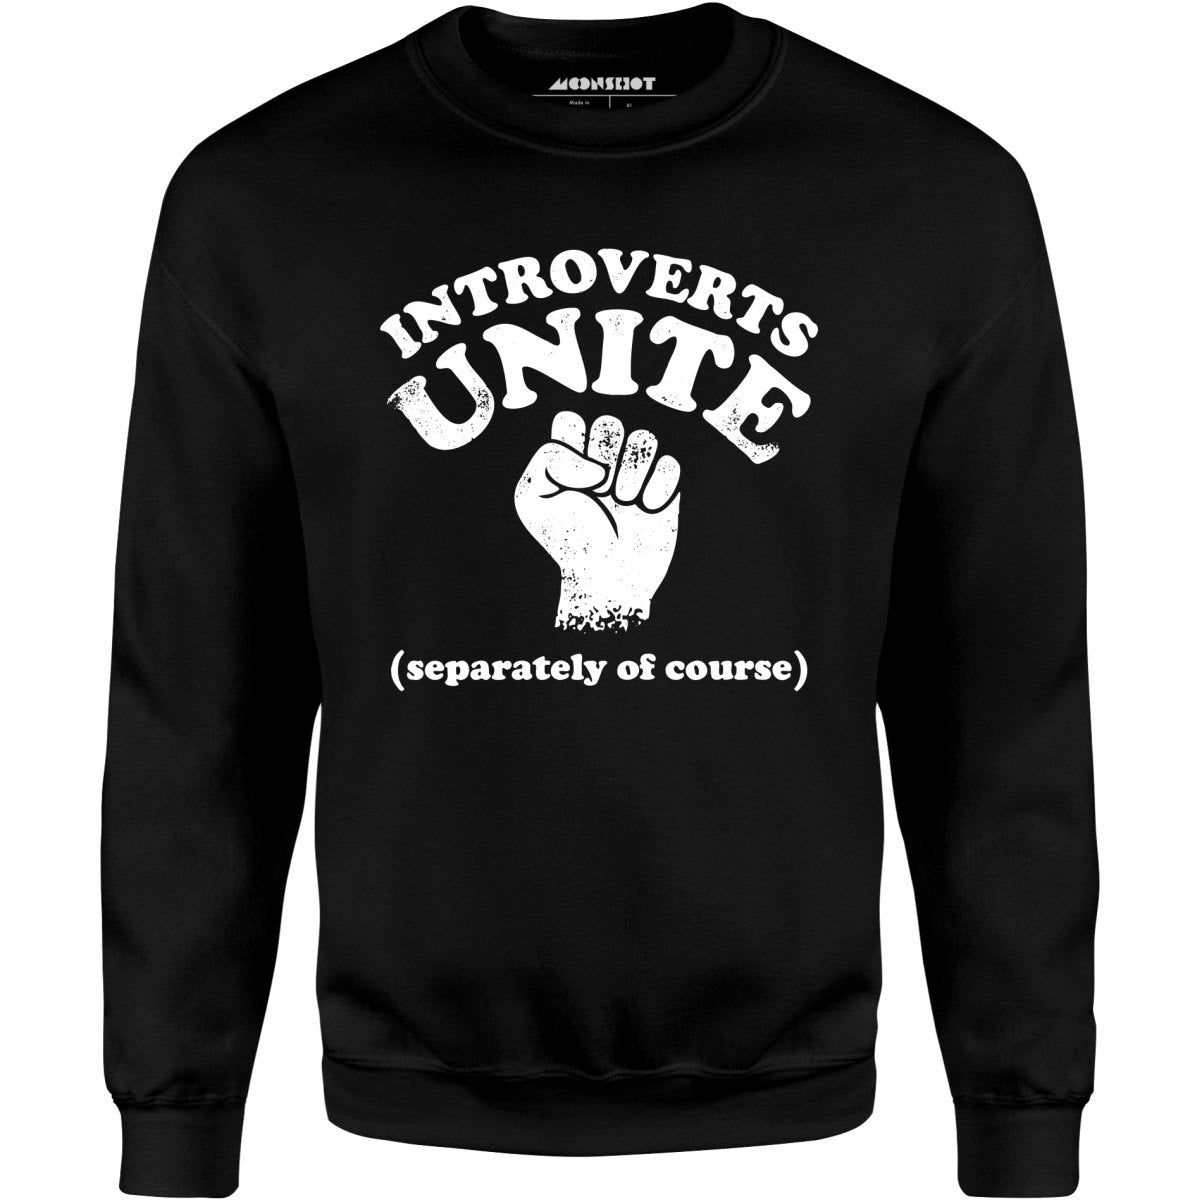 Introverts Unite - Unisex Sweatshirt